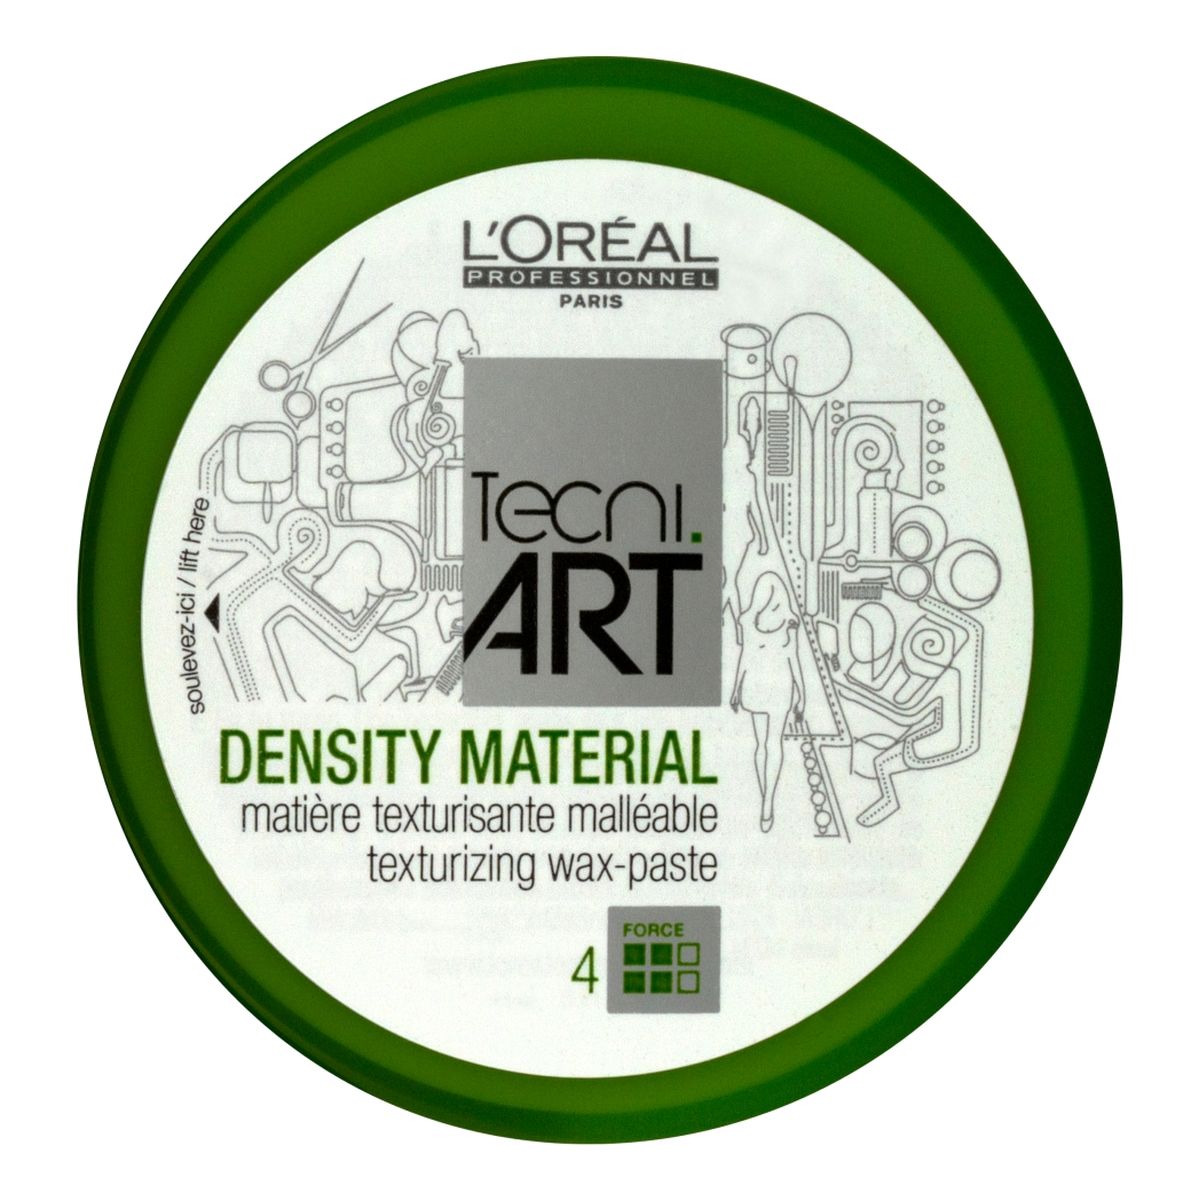 L'Oreal Paris Tecni Art Density Material plastyczny wosk strukturyzujący Force 4 100ml